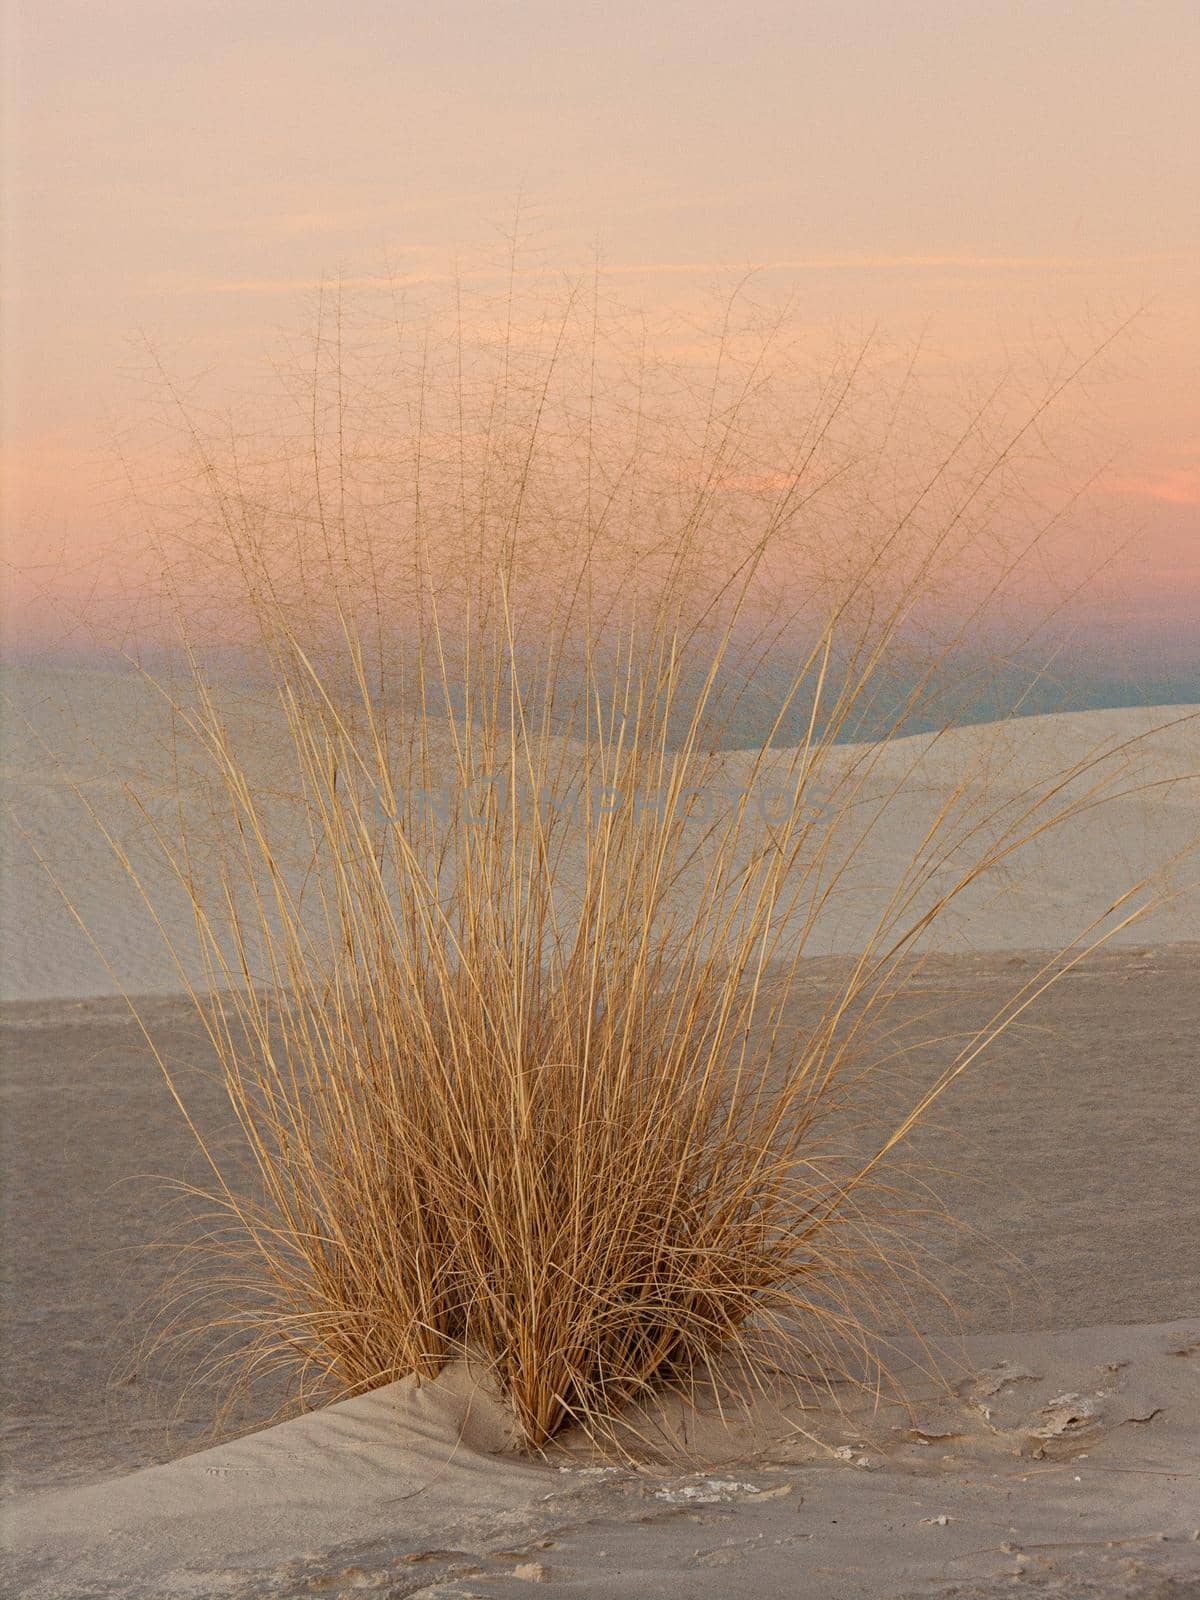 Desert Grasses in White Sands by lisaldw